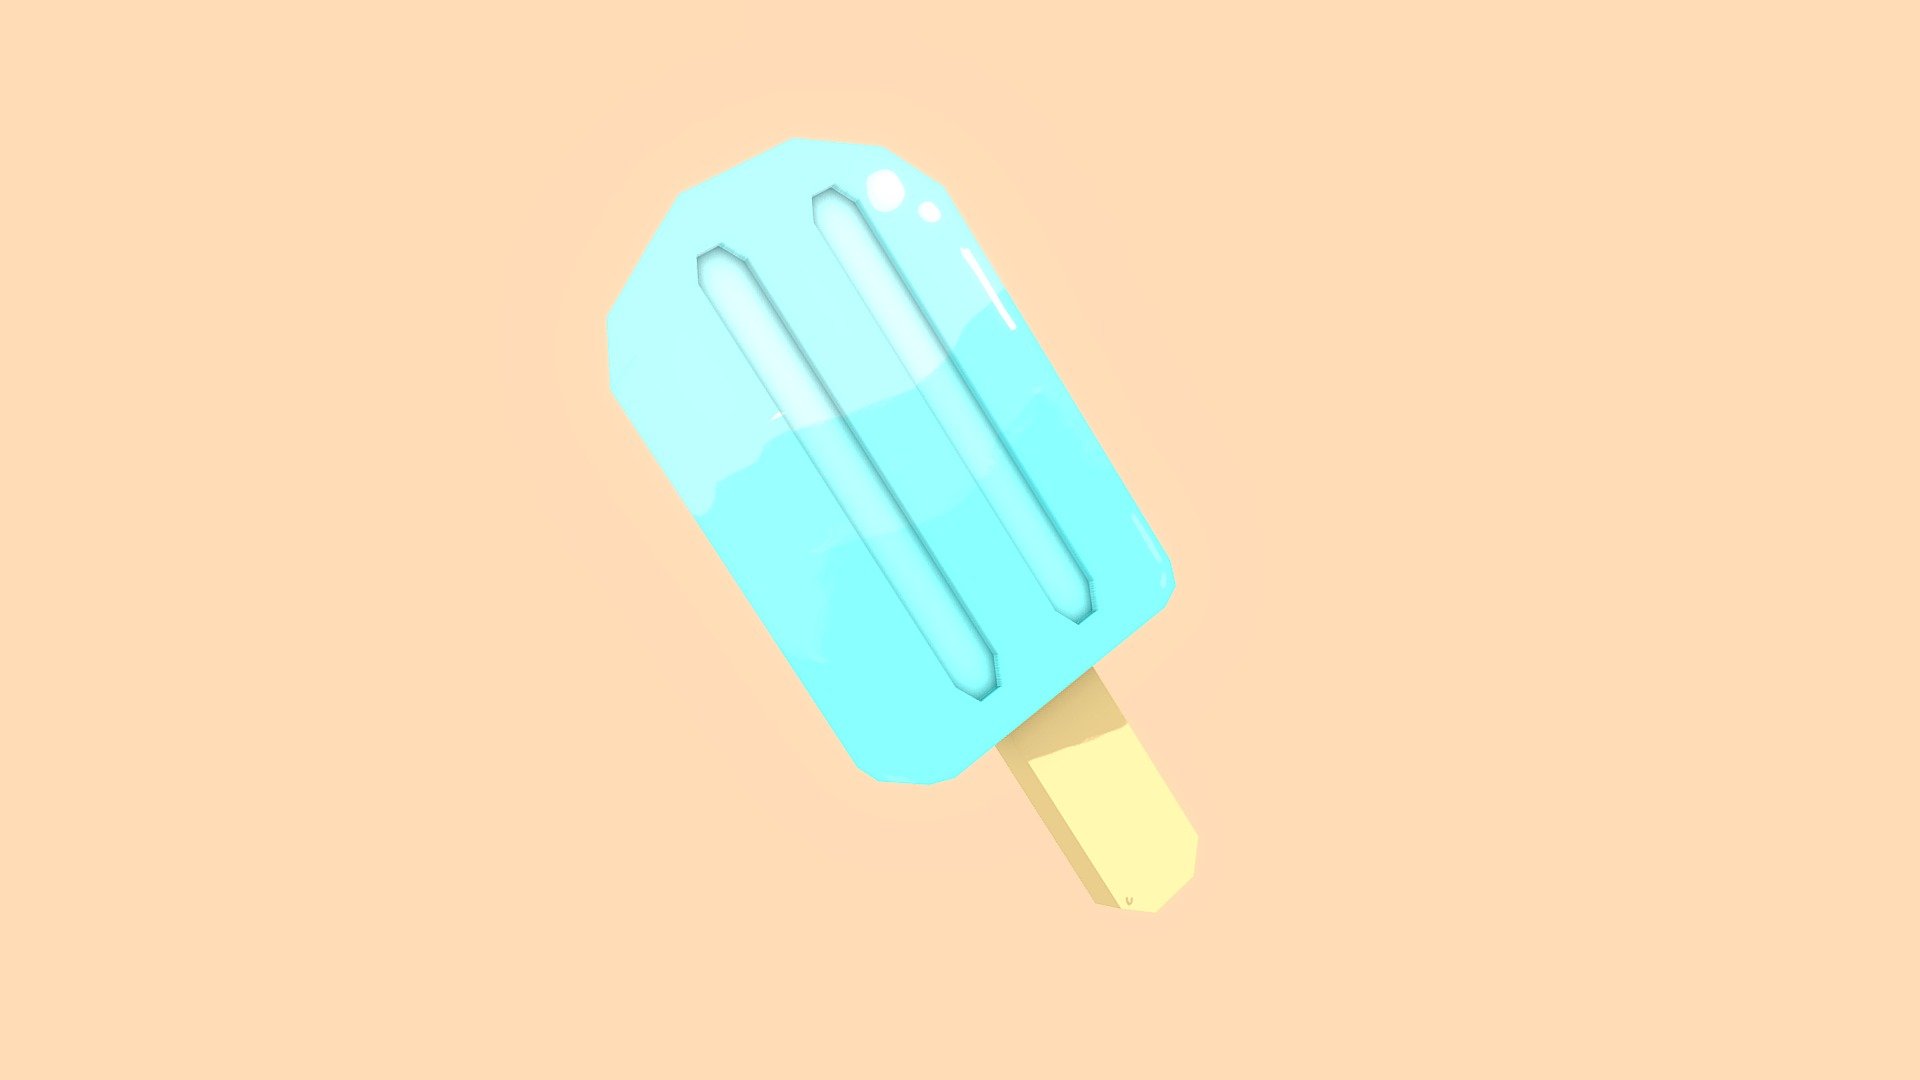 Popsicle - 3D model by Citrus (@citrusfriendd) 3d model